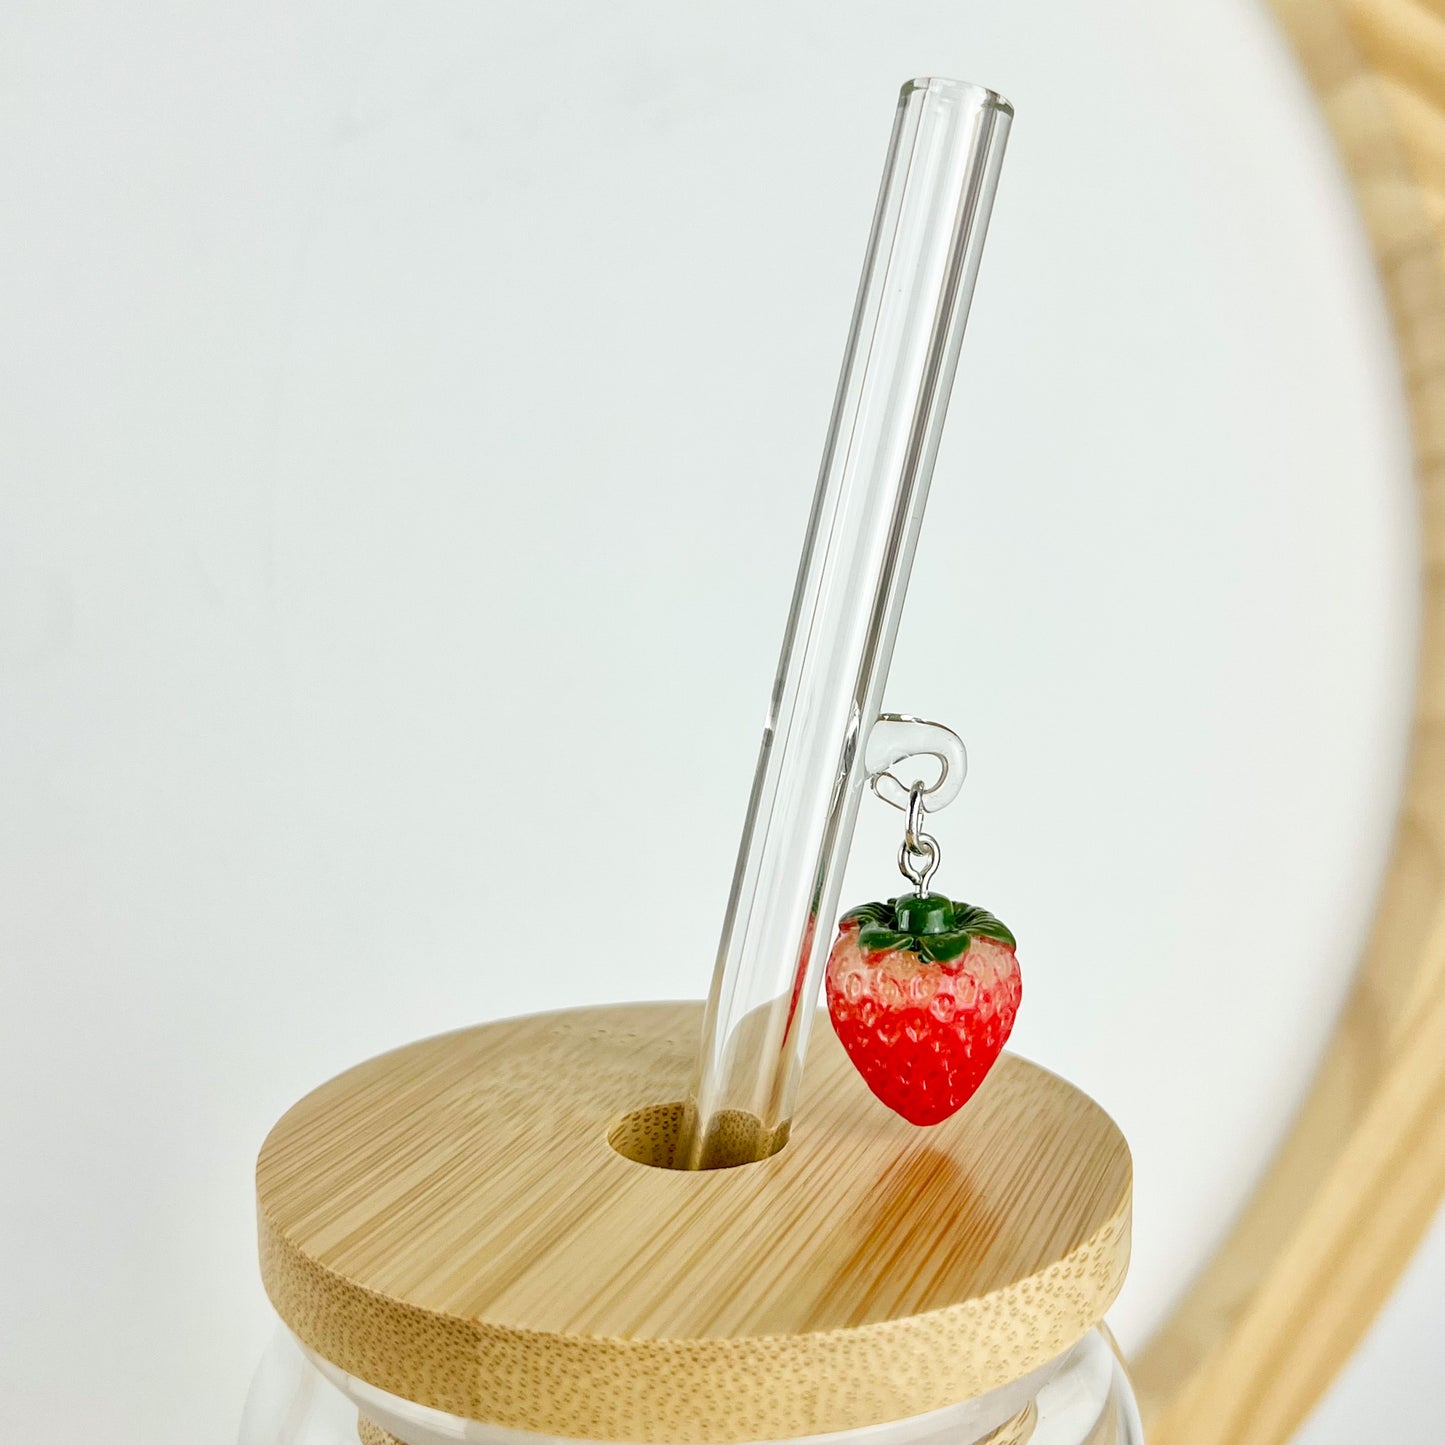 Glass Straw With Strawberry Charm